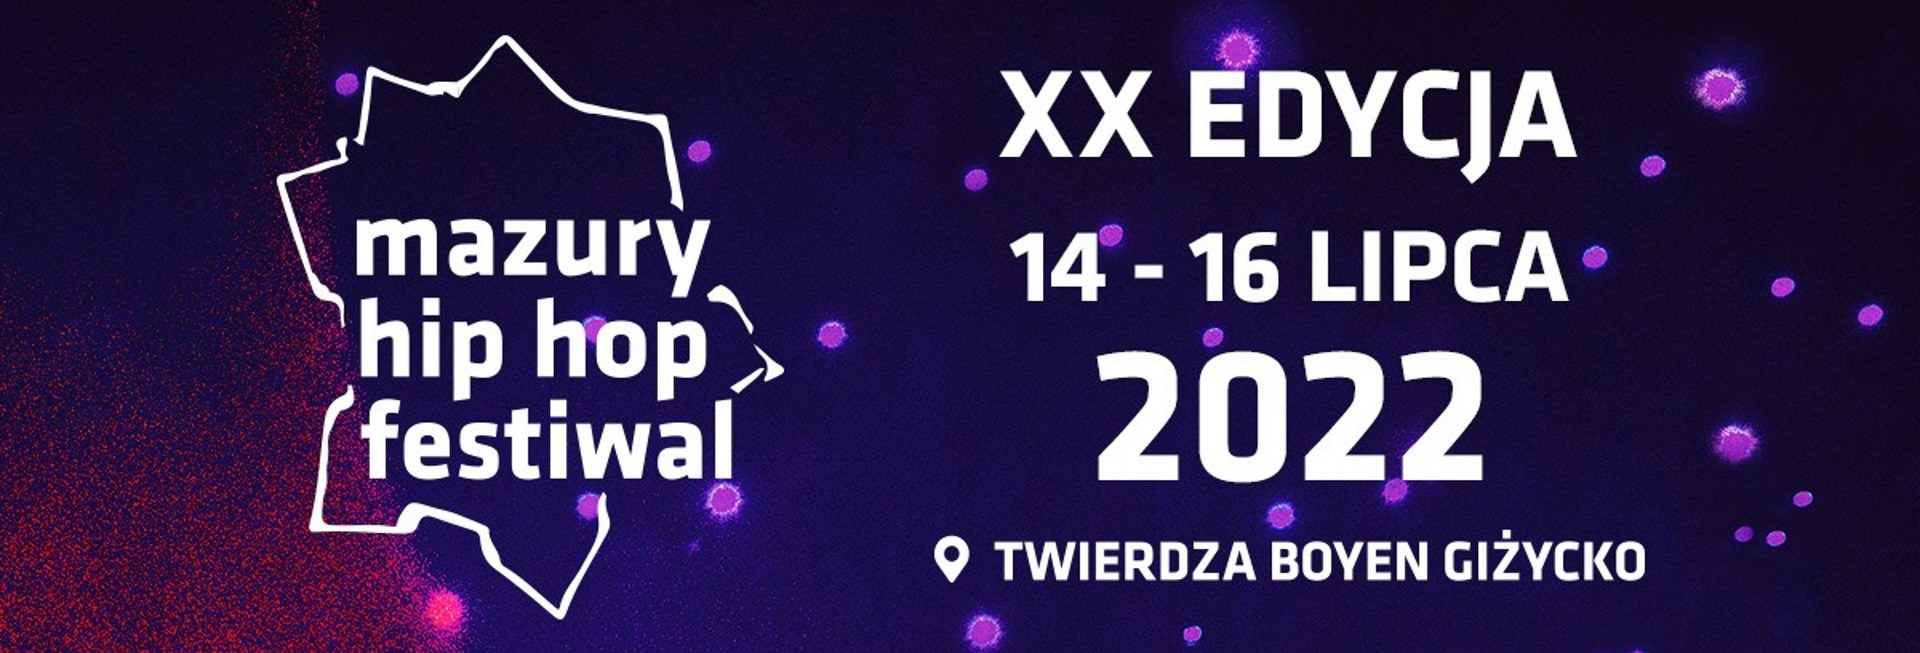 Plakat graficzny zapraszający do Giżycka na jubileuszową 20. edycję Mazury Hip Hop Festiwal – Giżycko 2022. Spotkajmy się w Twierdzy Boyen na najstarszym hip-hopowym festiwalu w Polsce!